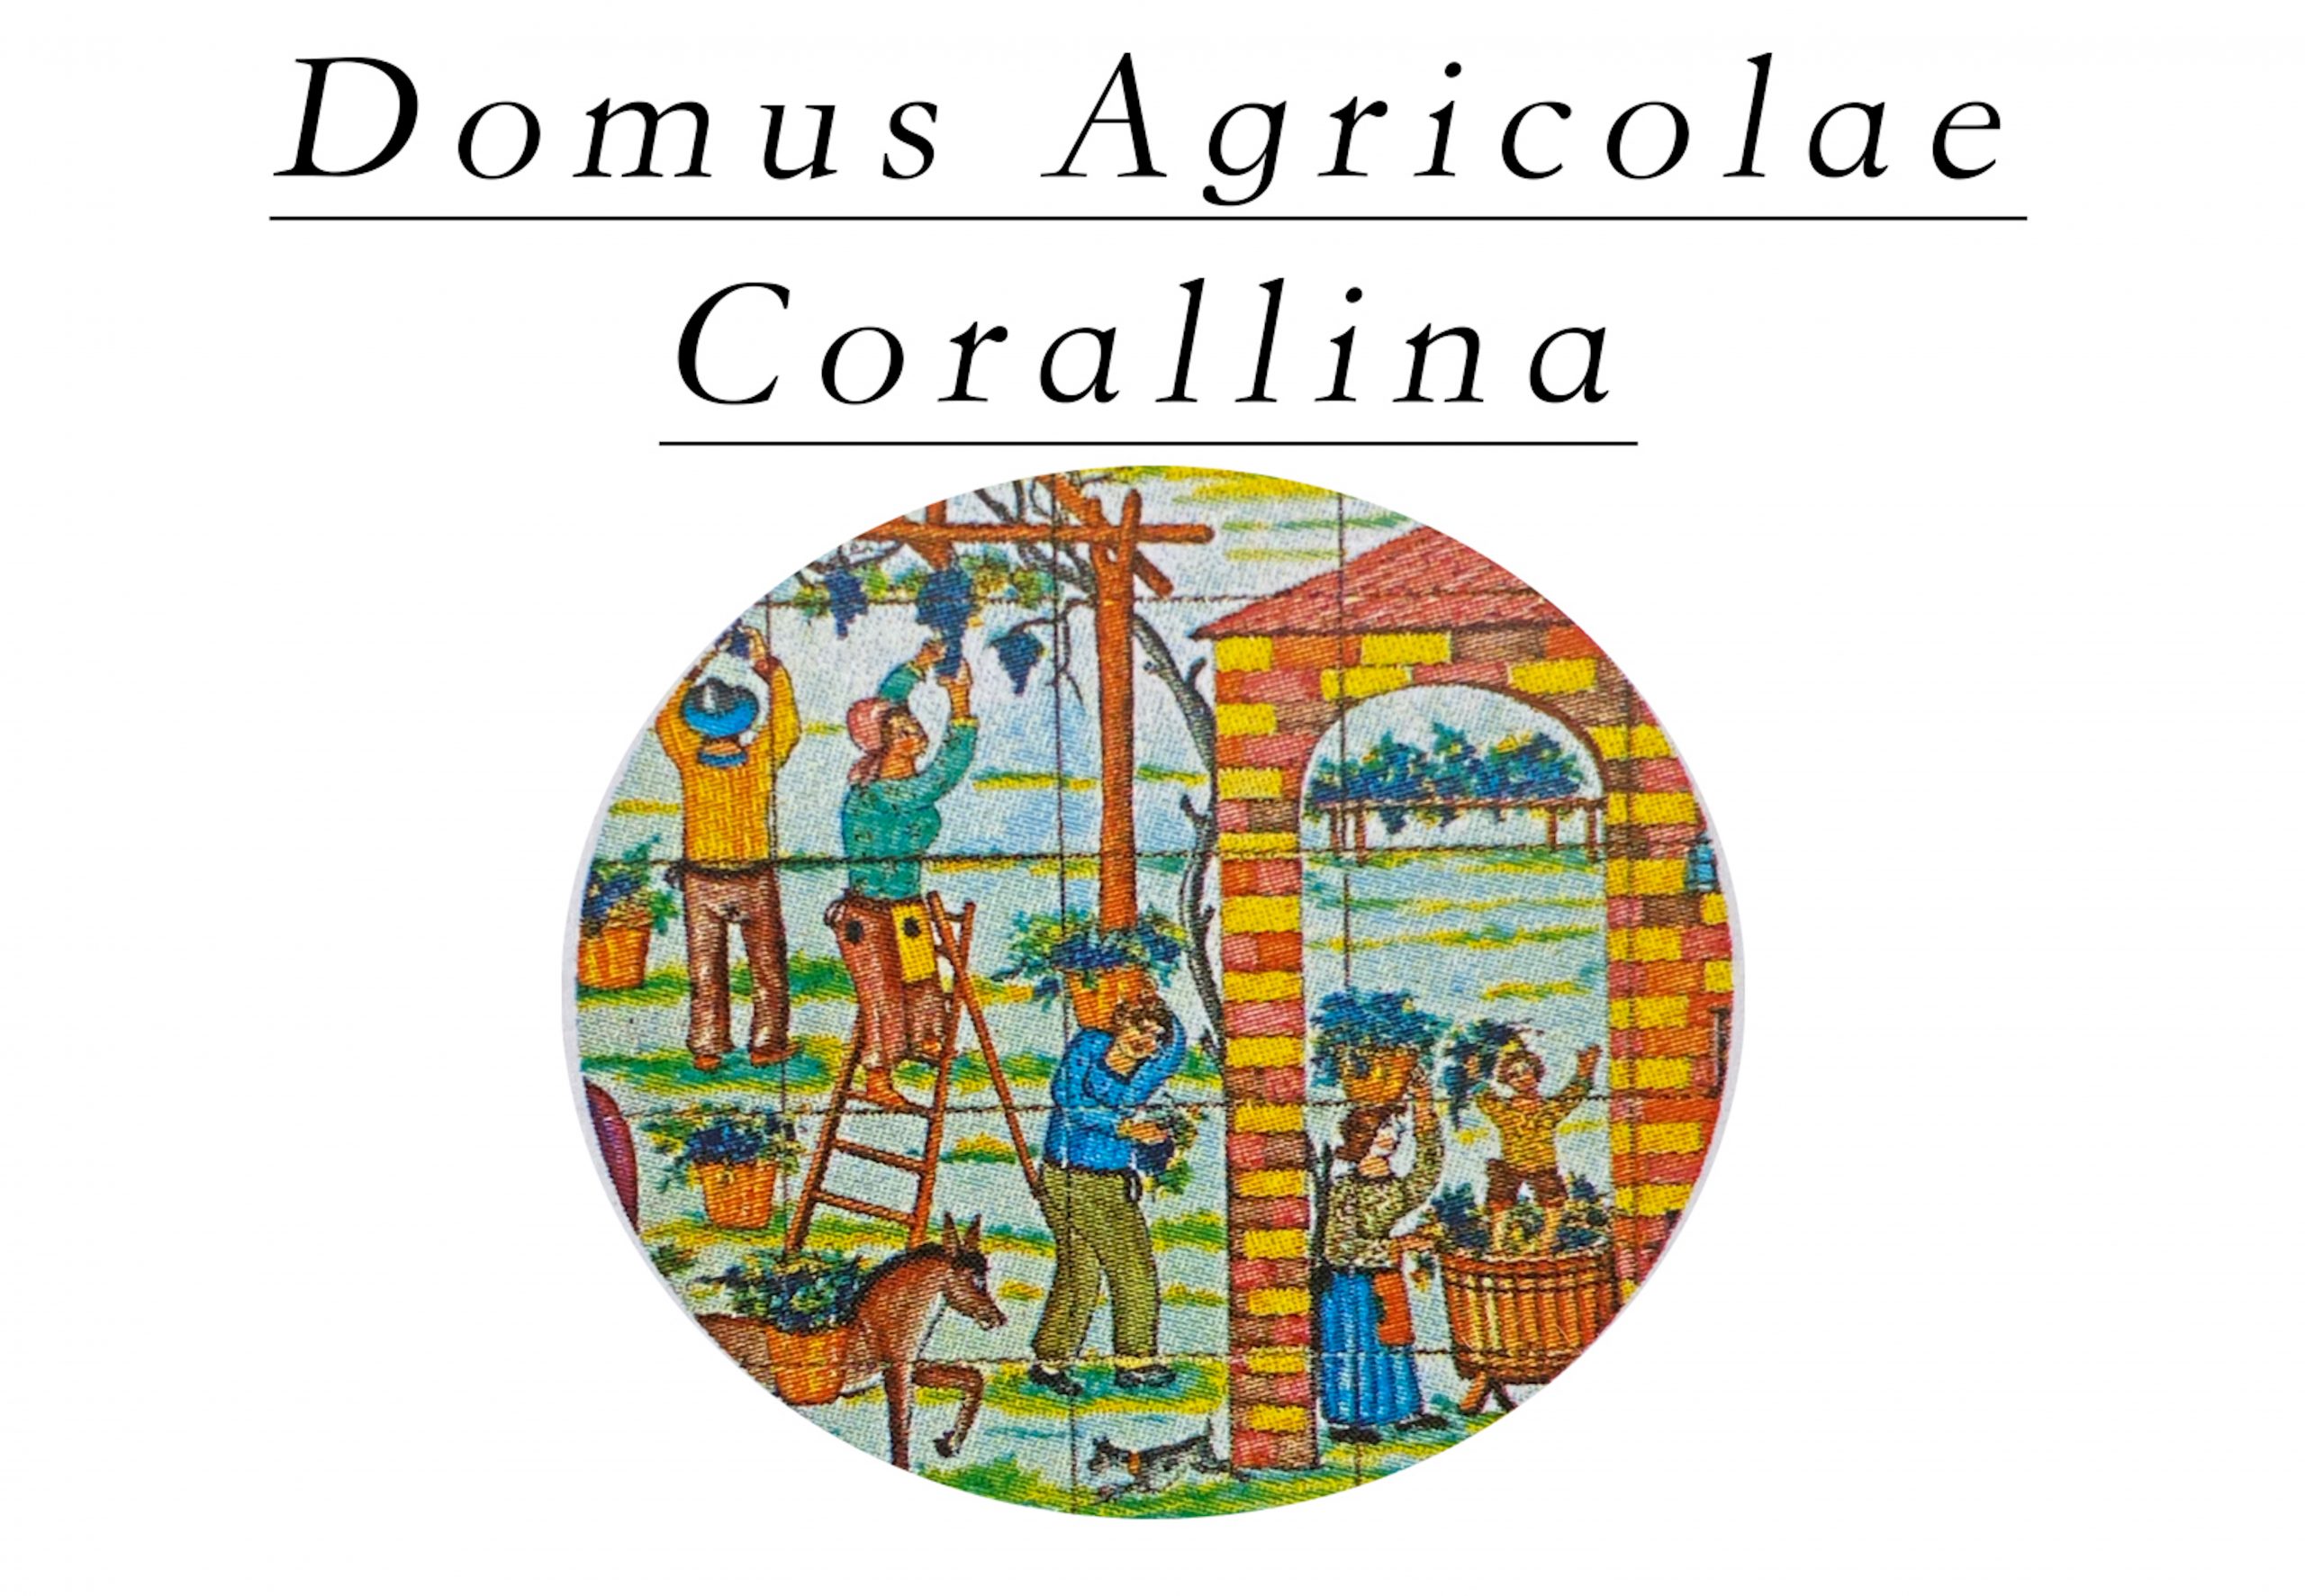 Domus Agricolae Corallina